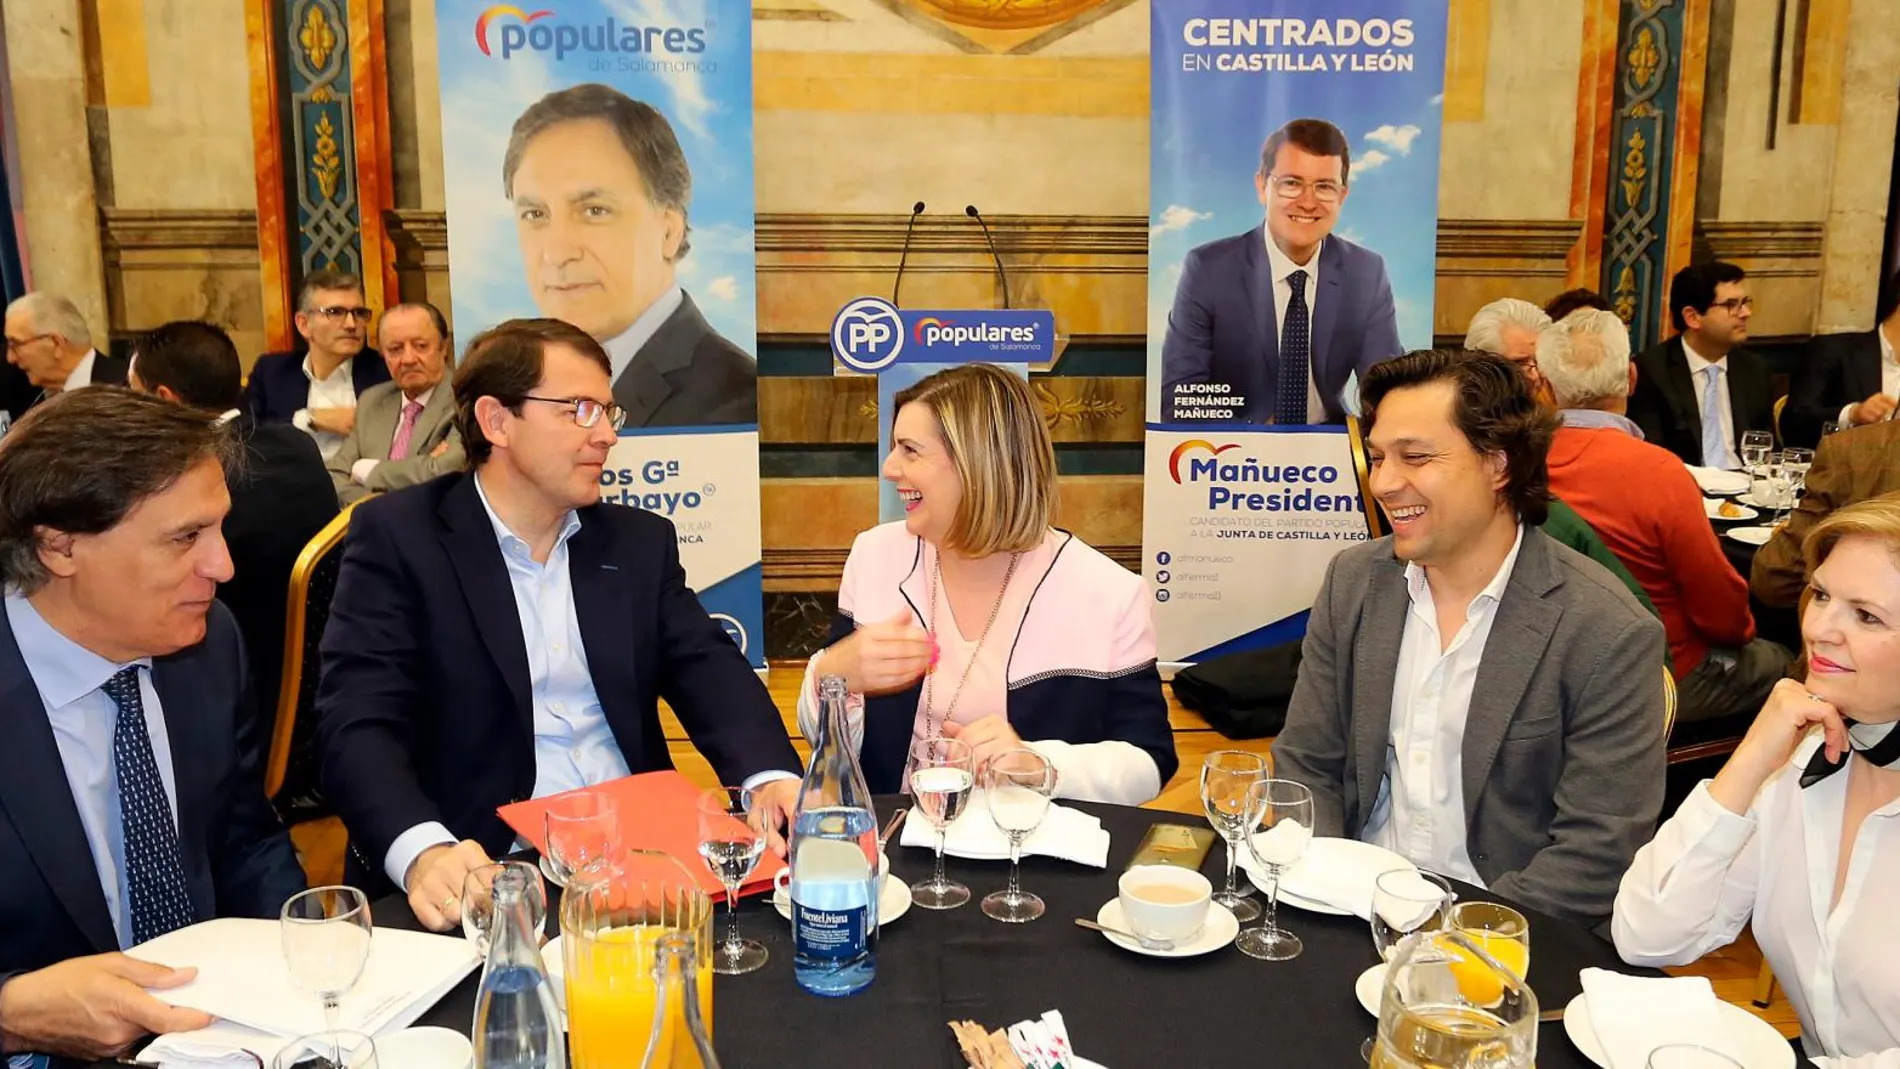 El candidato del PP a la Presidencia de la Junta de Castilla y León, Alfonso Fernández Mañueco, junto al alcalde, Carlos García Carbayo, conversa con empresarios de Salamanca